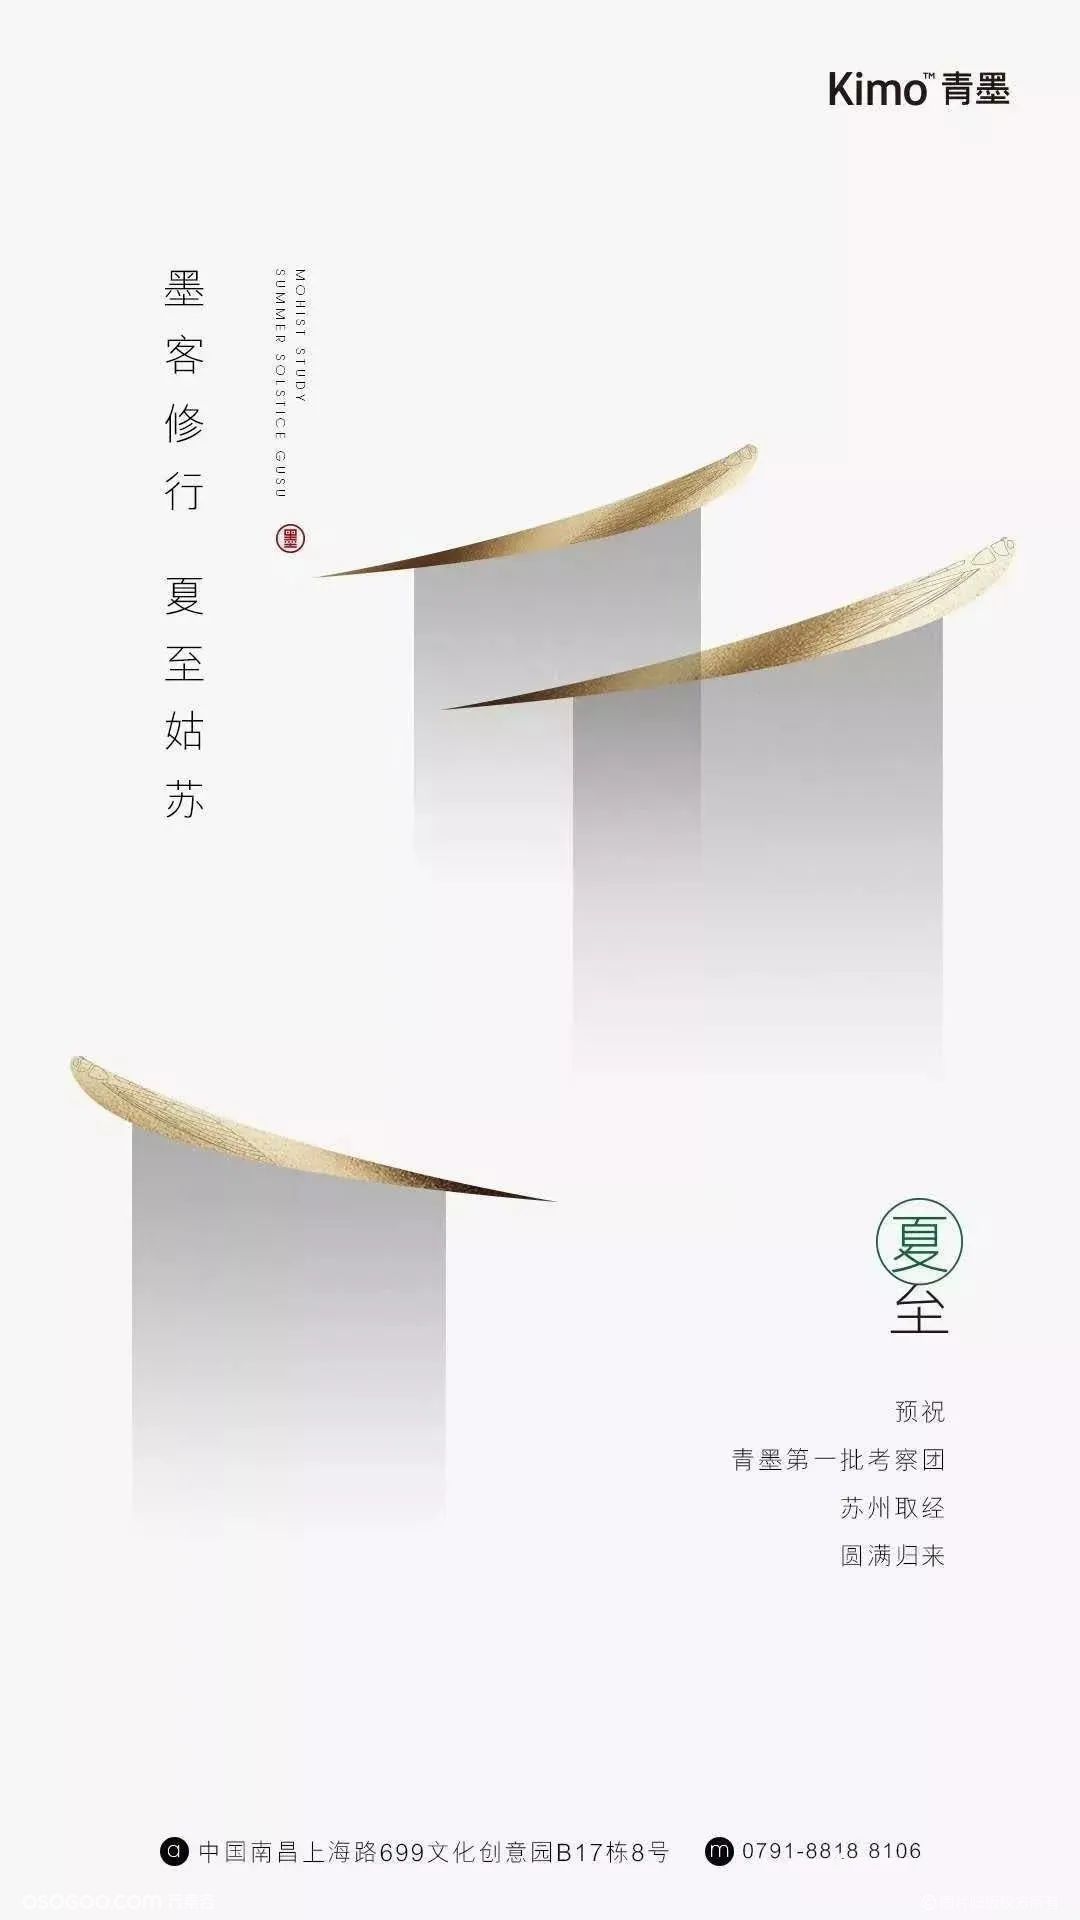 24节气【夏至】品牌海报分享